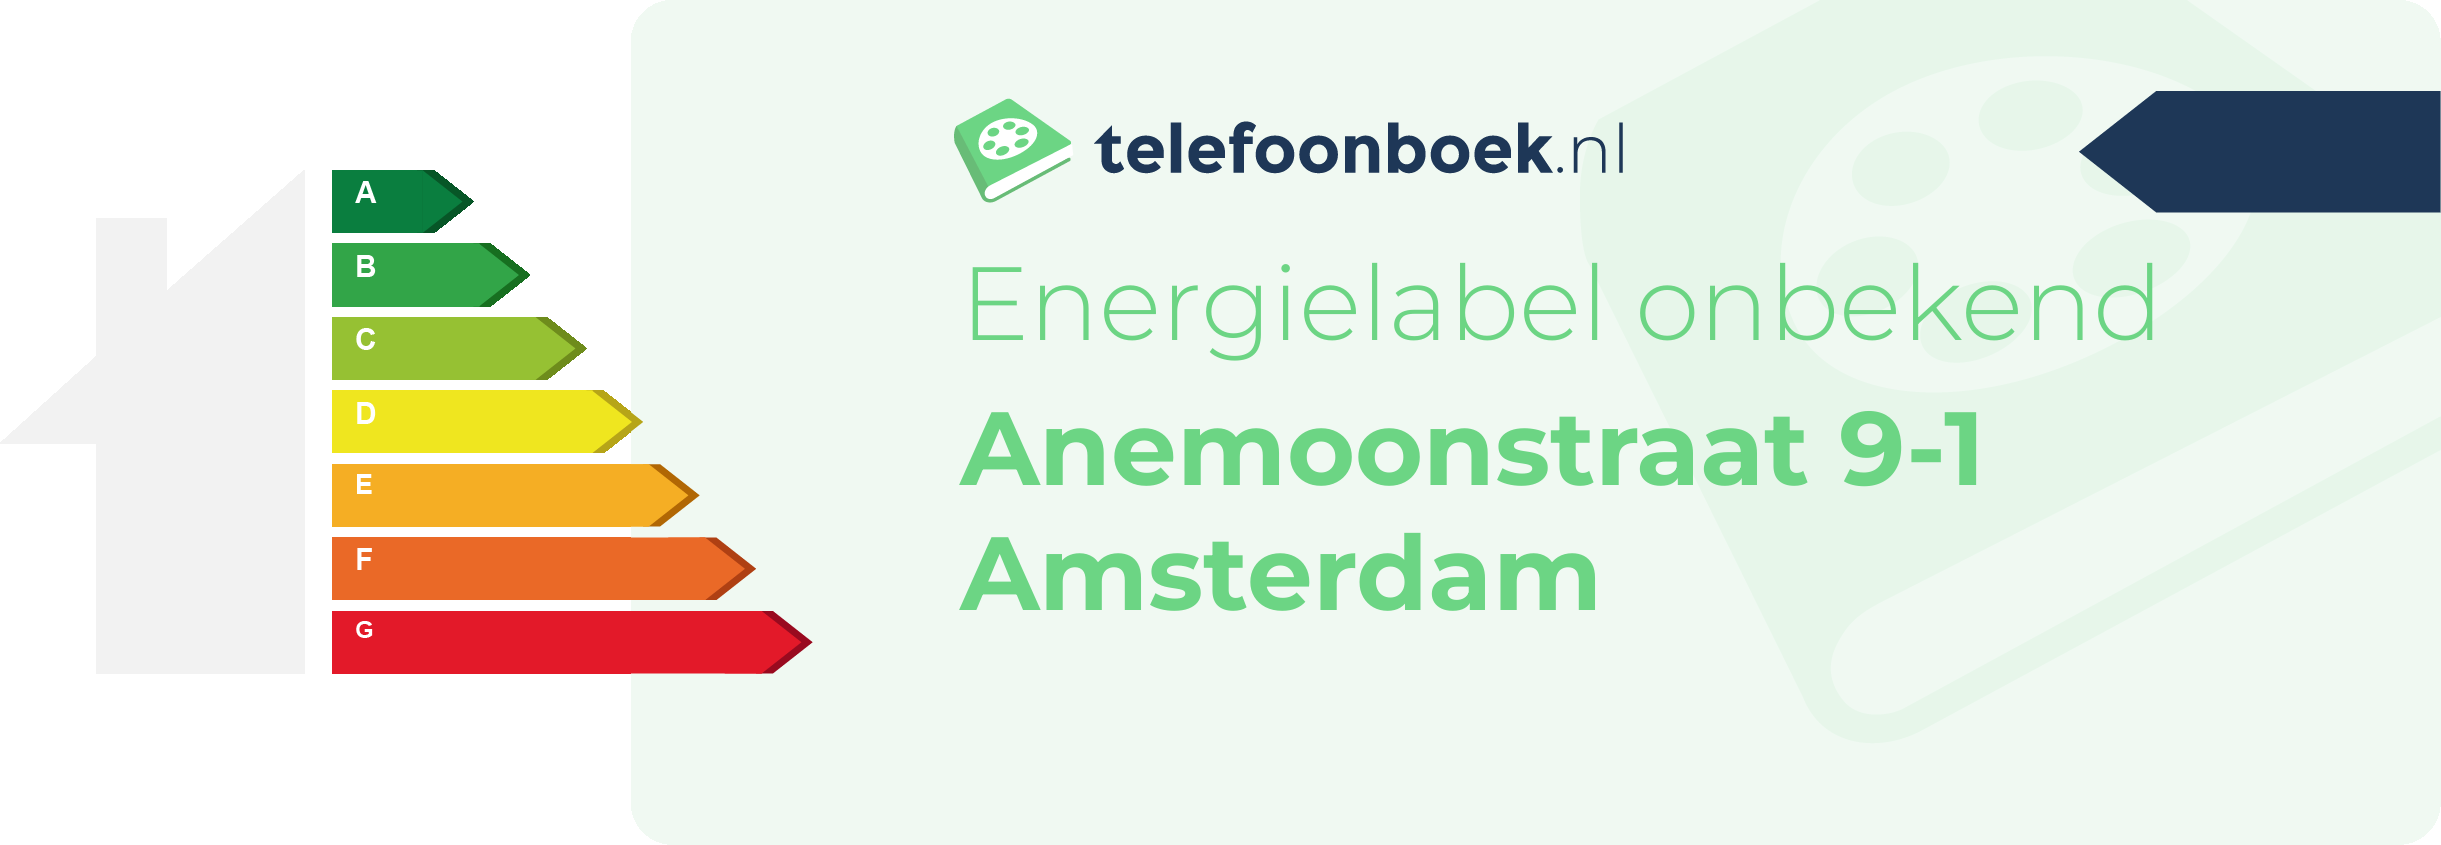 Energielabel Anemoonstraat 9-1 Amsterdam